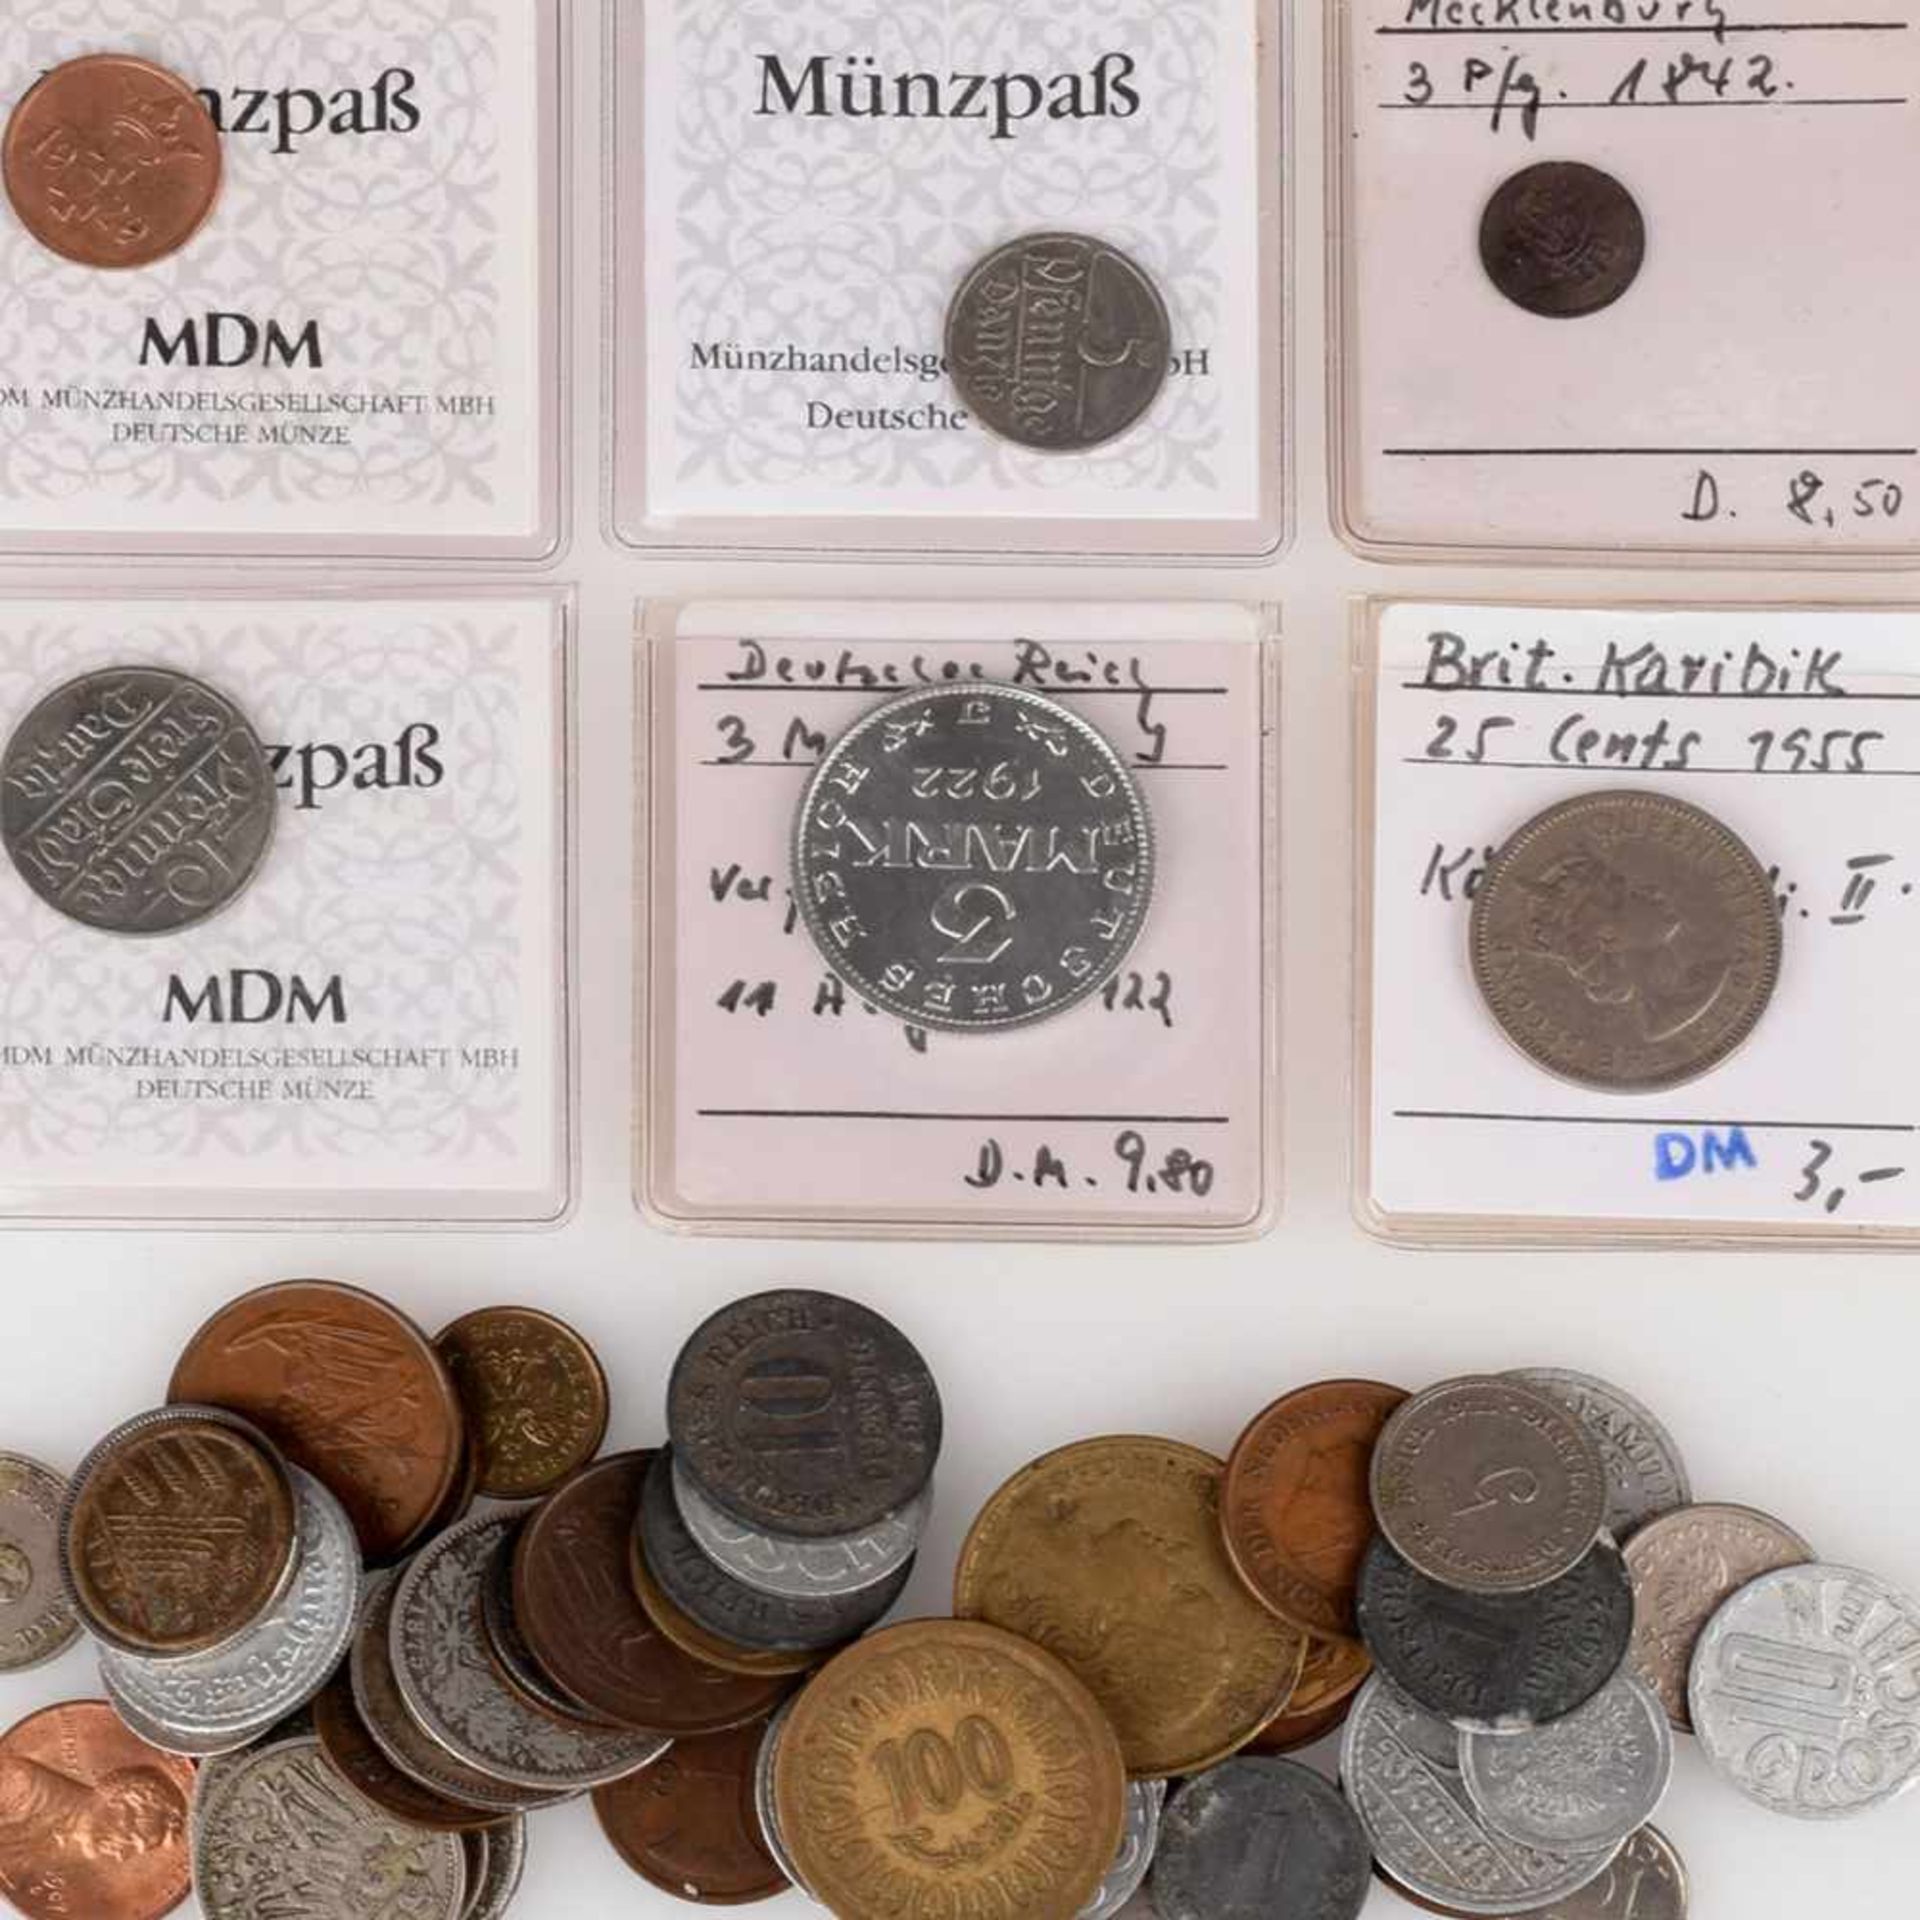 Konvolut Münzen und Silbermünzen insg. über 50 Stück, dabei u.a. 1 x 3 Pf Mecklenburg 1842, 1 x 1